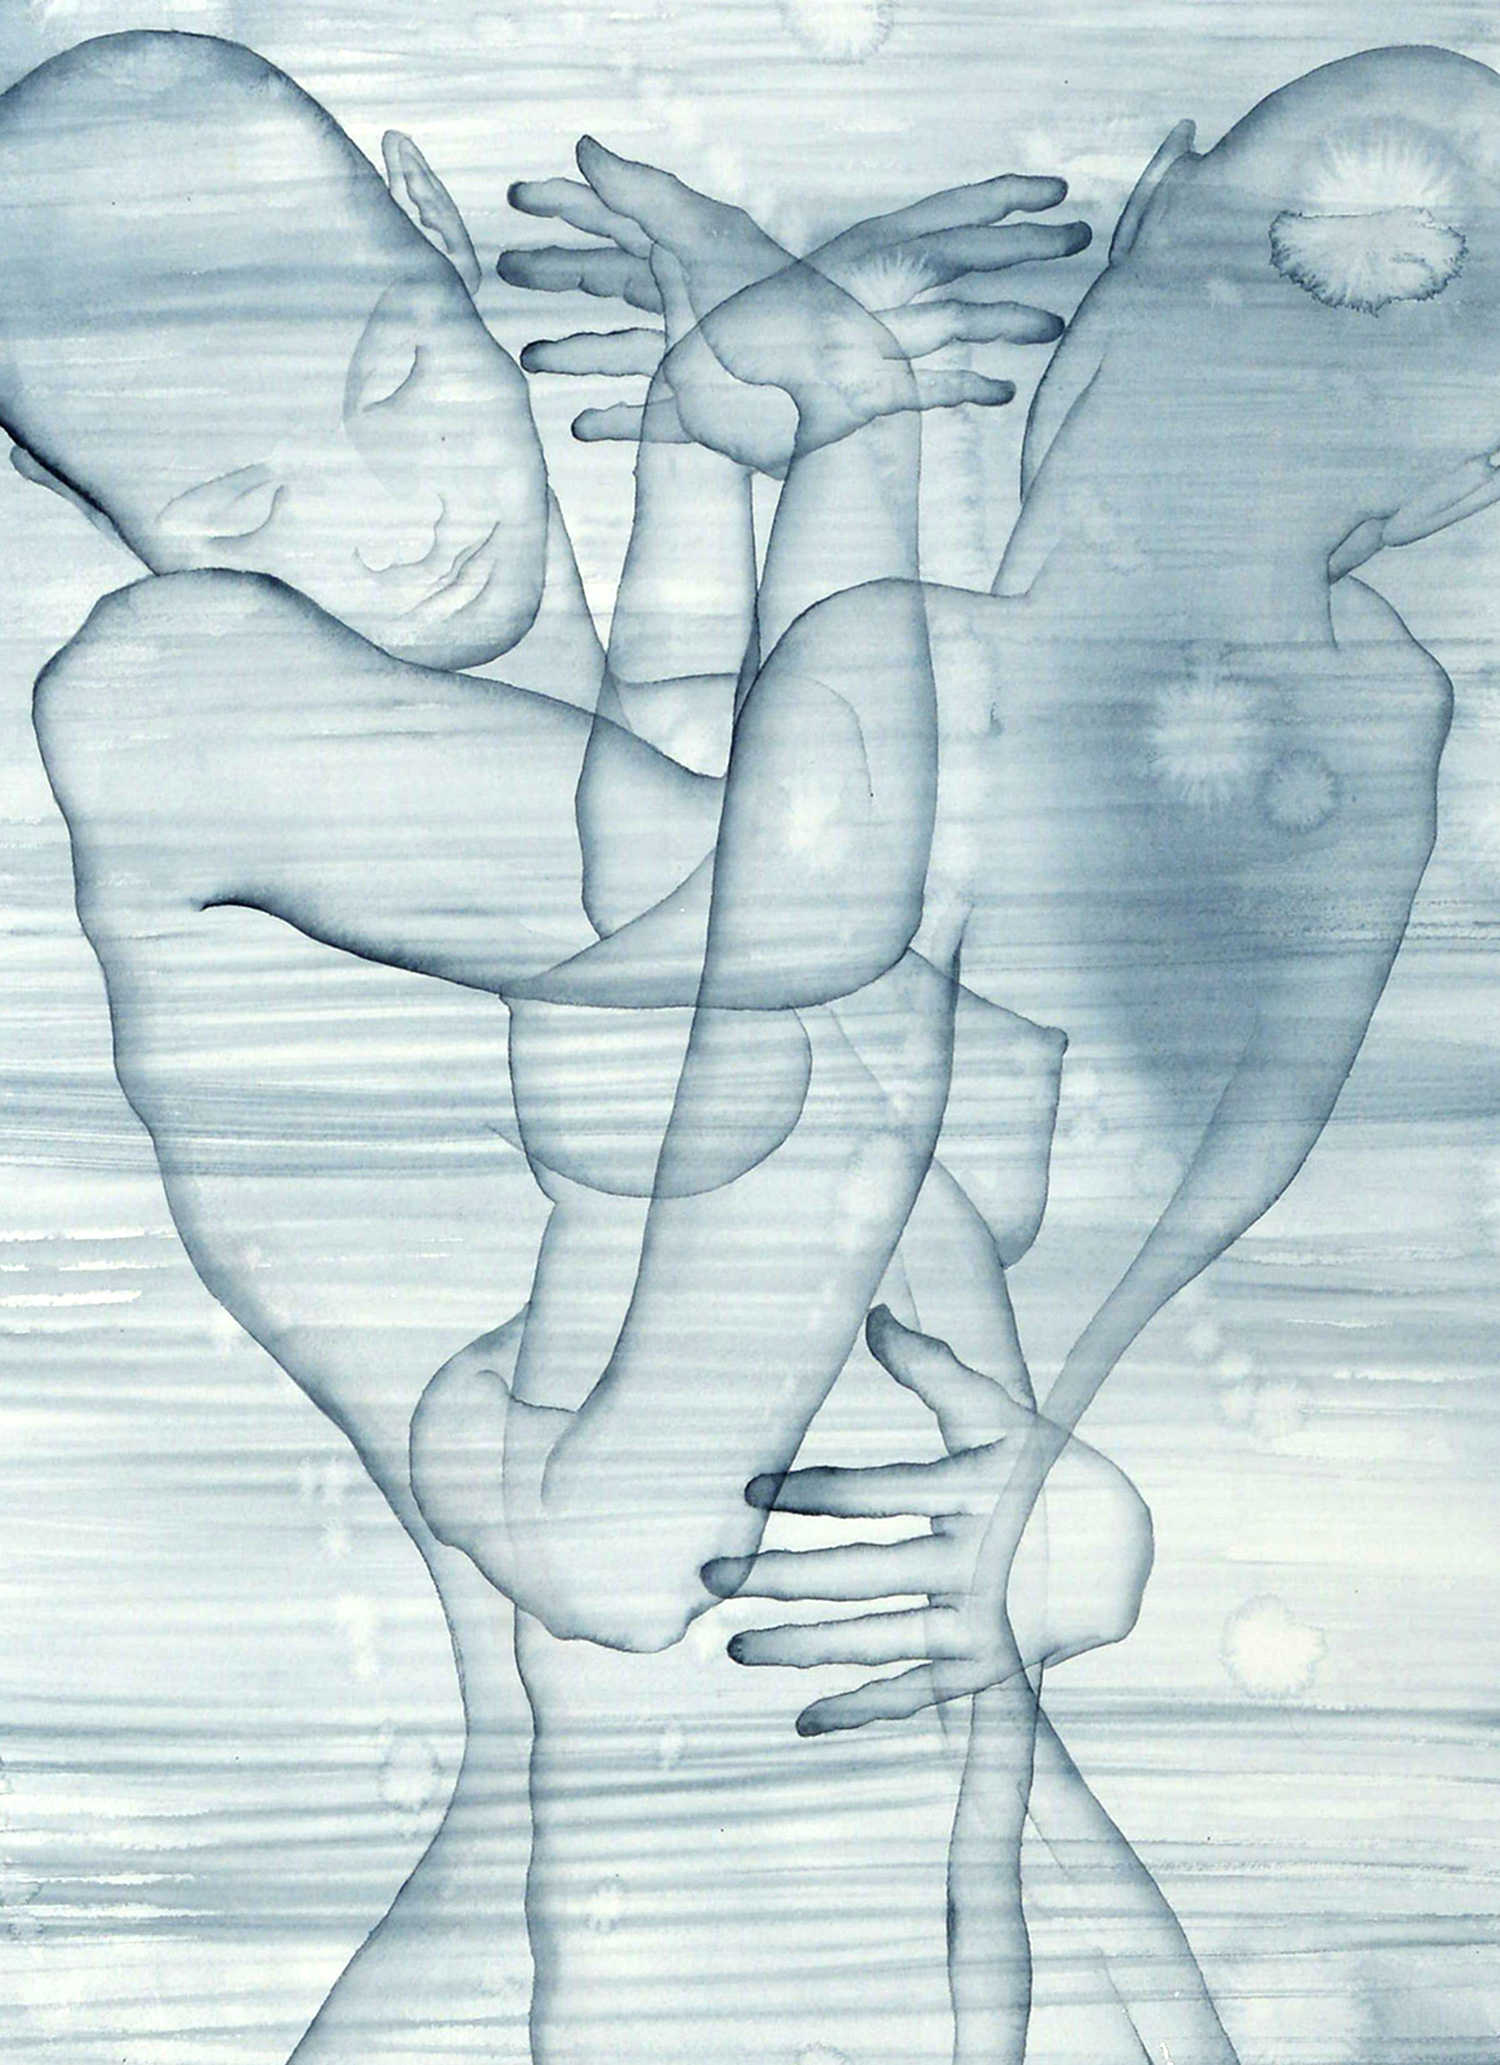 Stefano Bolzano, Corpo e coscienza, acquerello su carta, 48x69 cm, 2020 (dettaglio).